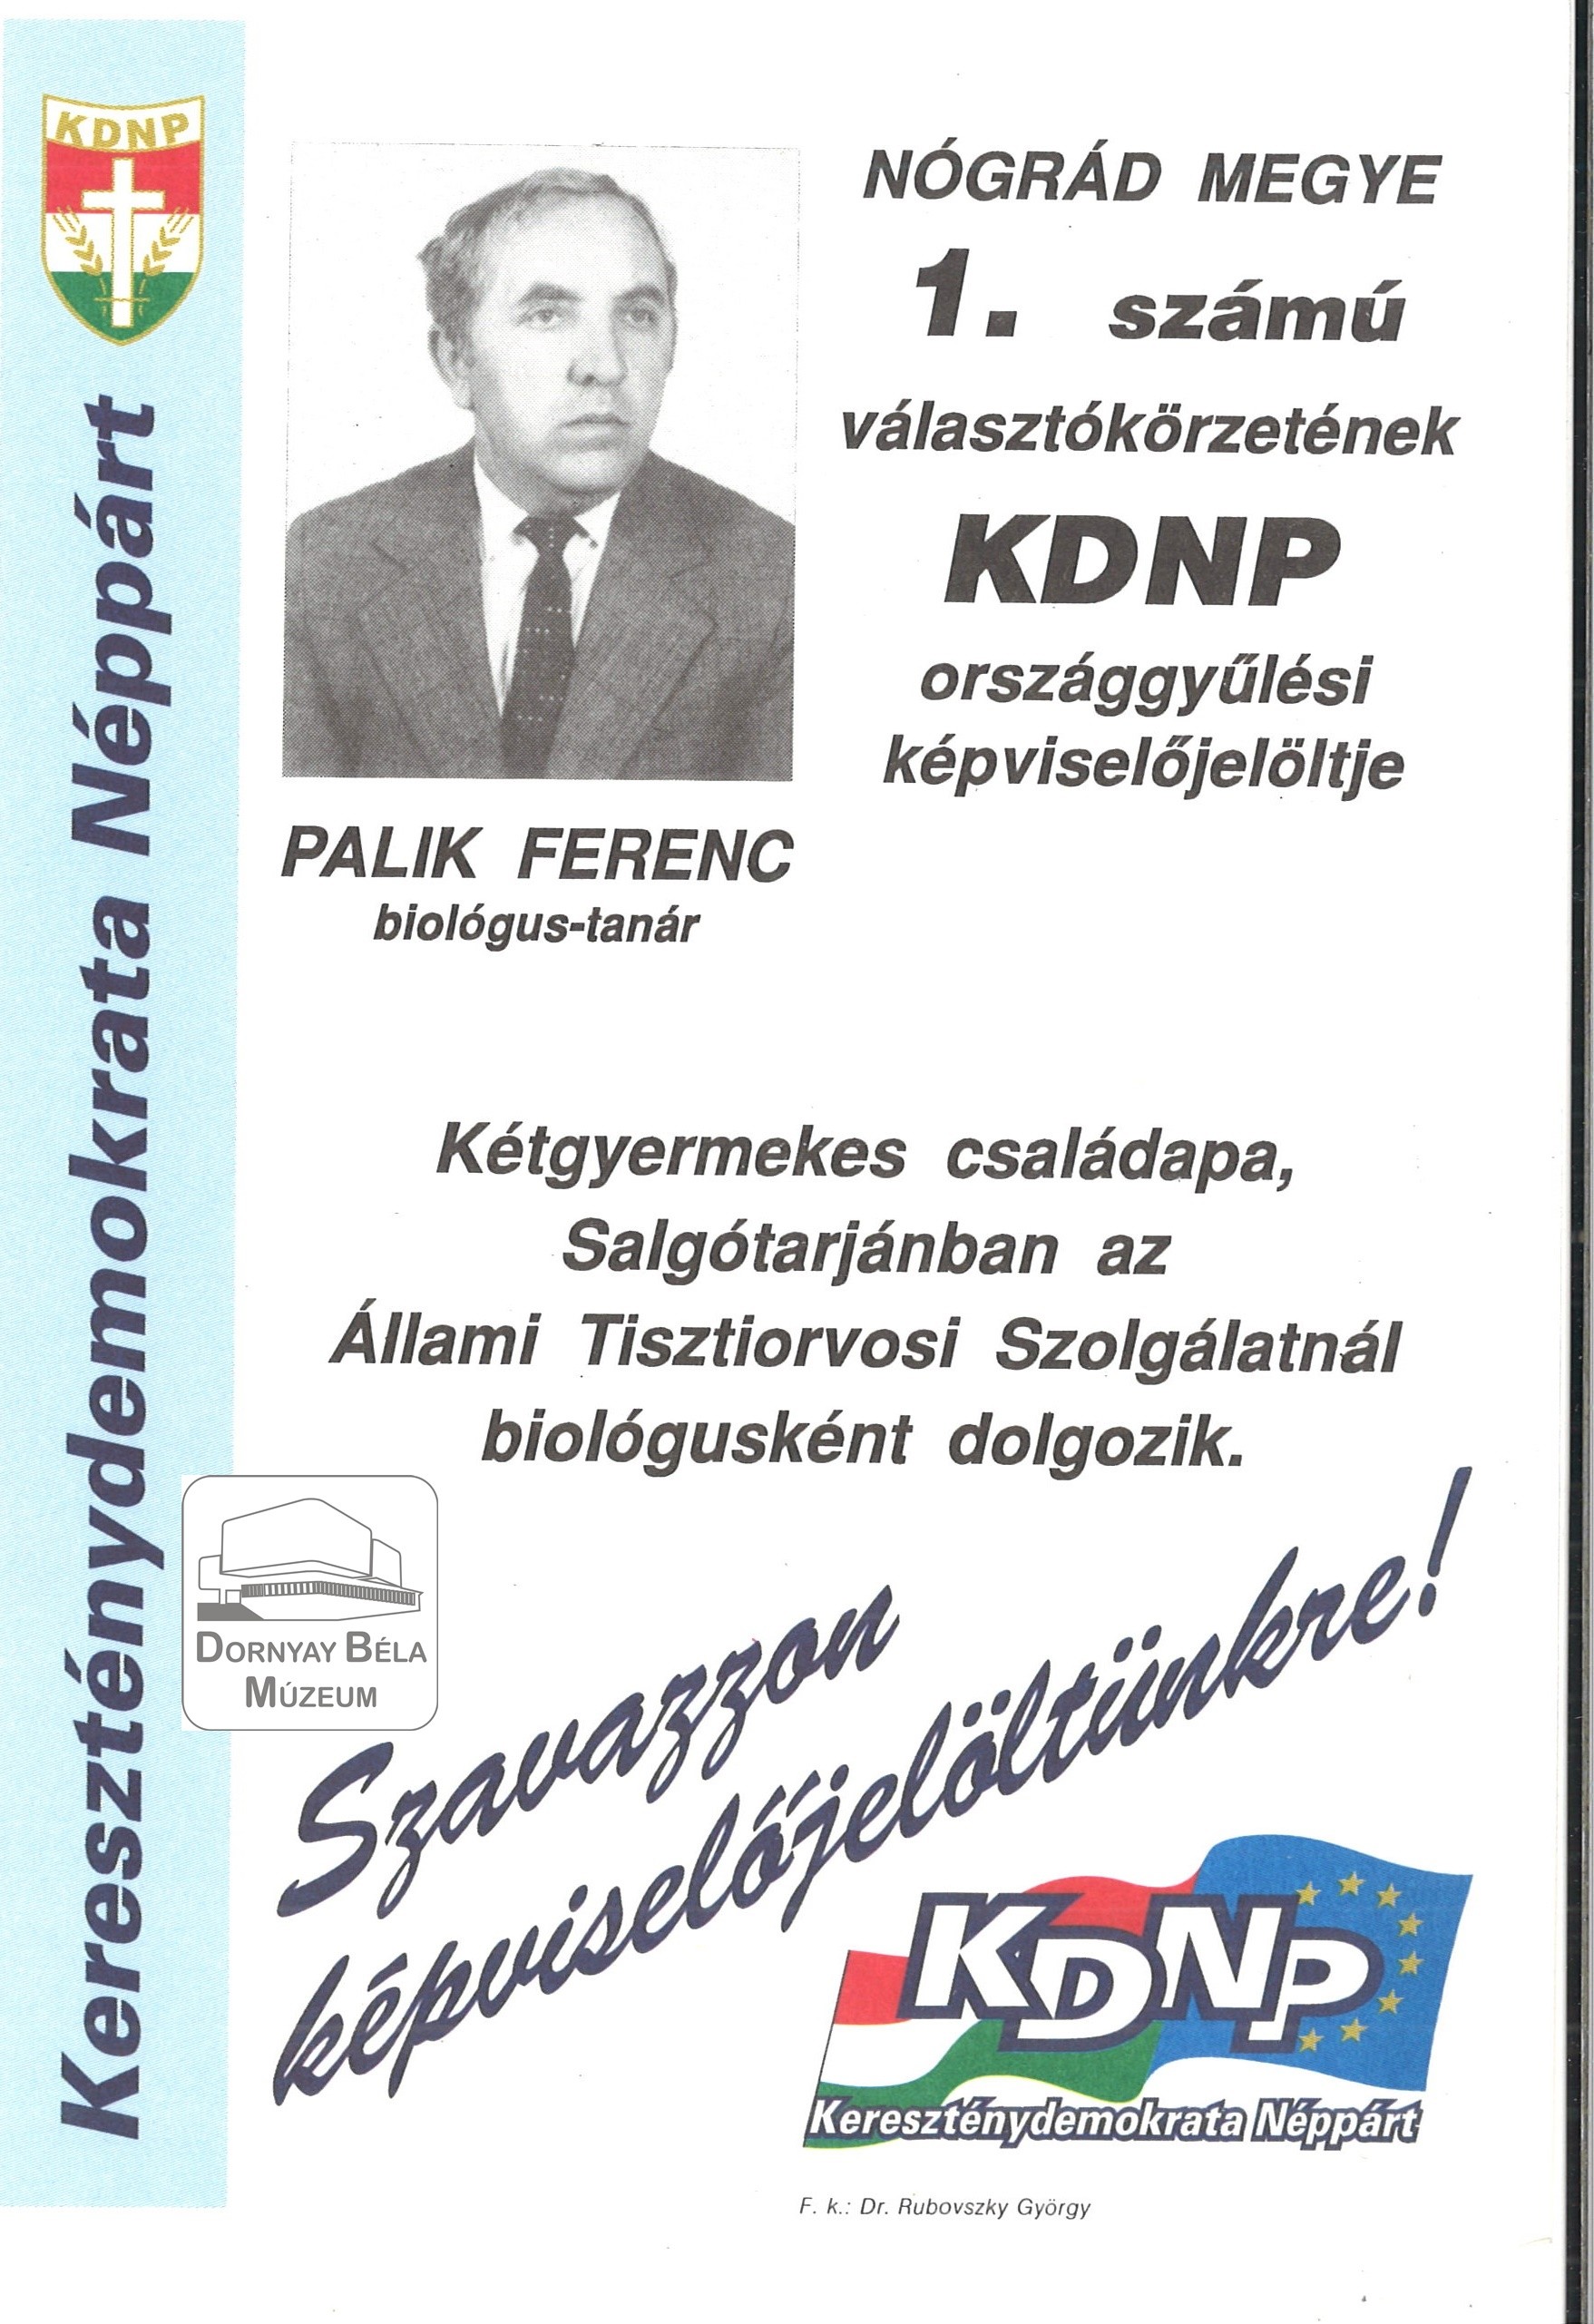 Palik Ferenc Nógrád megye 1.sz. Választókörzetének KDNP országgyűlési képviselőjelöltje (Dornyay Béla Múzeum, Salgótarján CC BY-NC-SA)